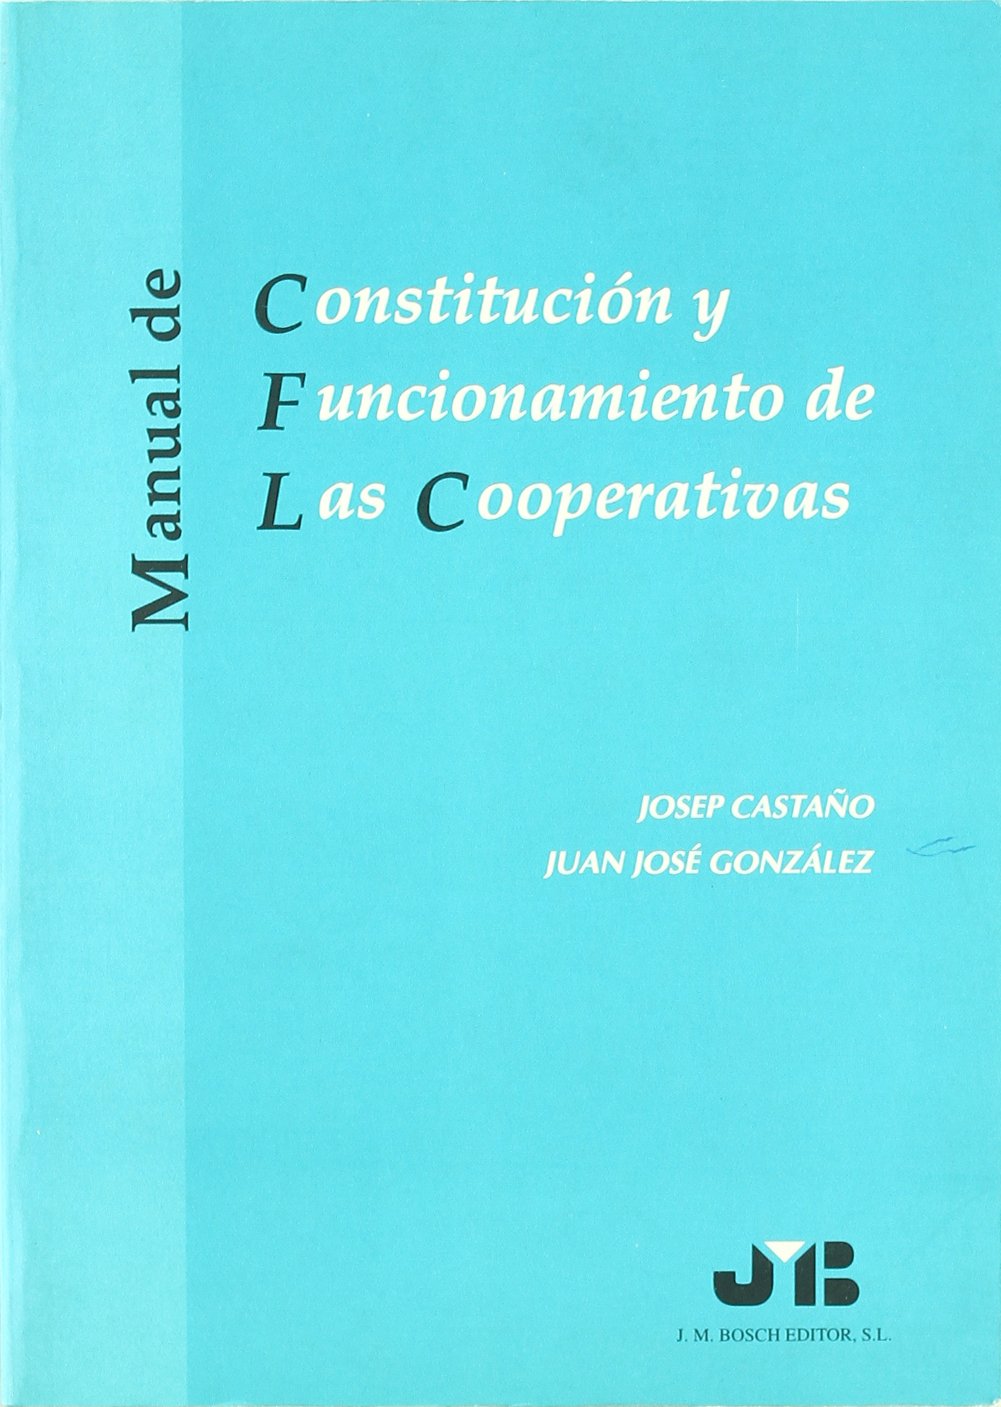 Constitución y Funcionamiento de las Cooperativas